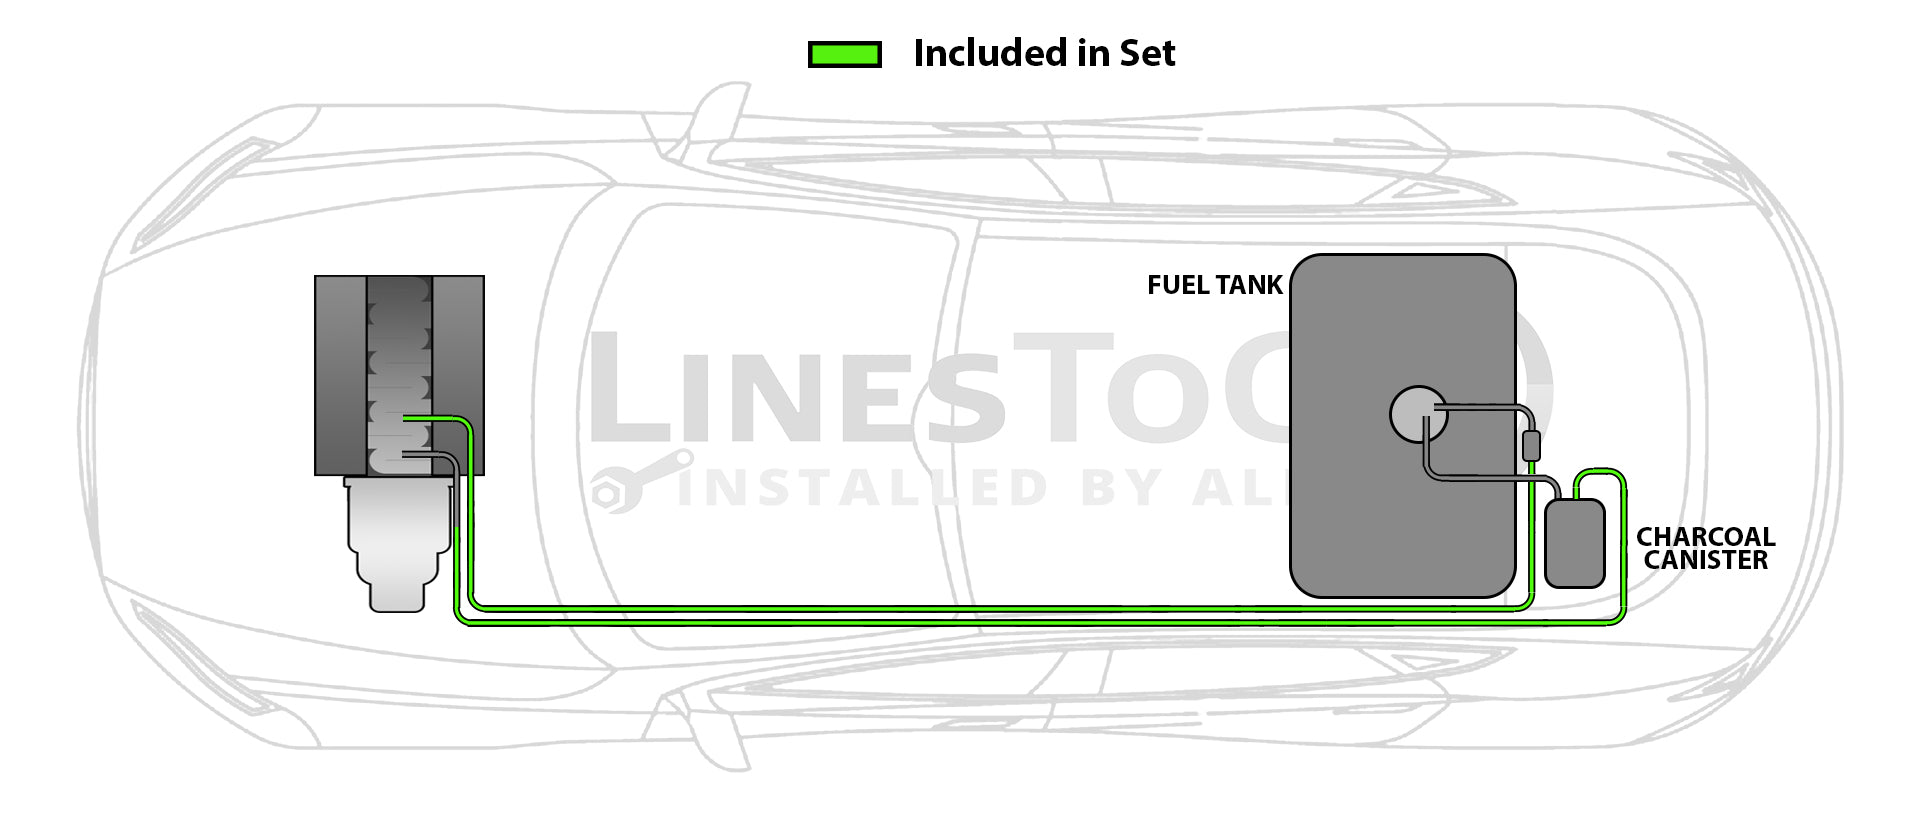 Chevy Cobalt Fuel Line Set 2008 2 & 4 Door 2.4L w/External Fuel Filter FL255-A1I